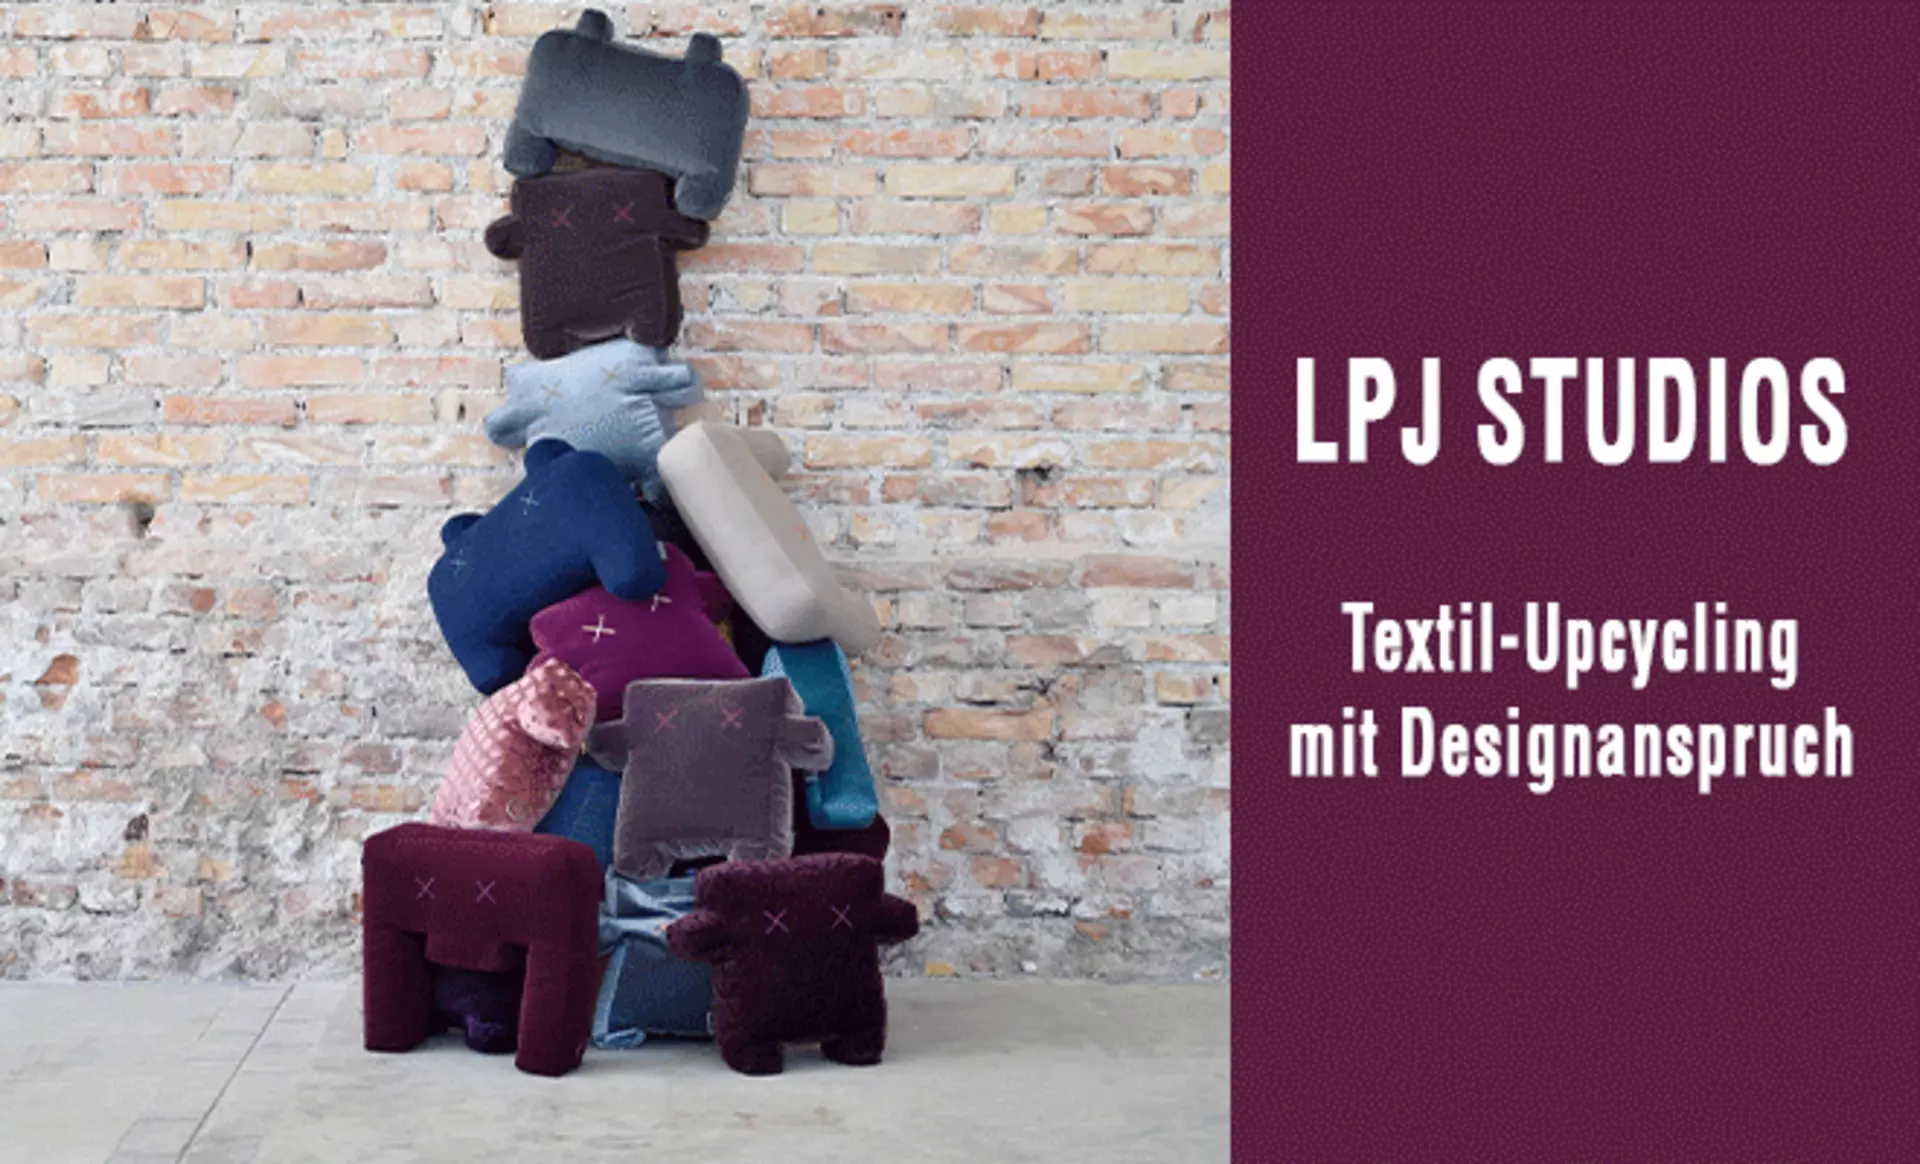 LPJ Studios - Textil-Upcycling mit Designanspruch. Jetzt den inspirierenden Beitrag entdecken